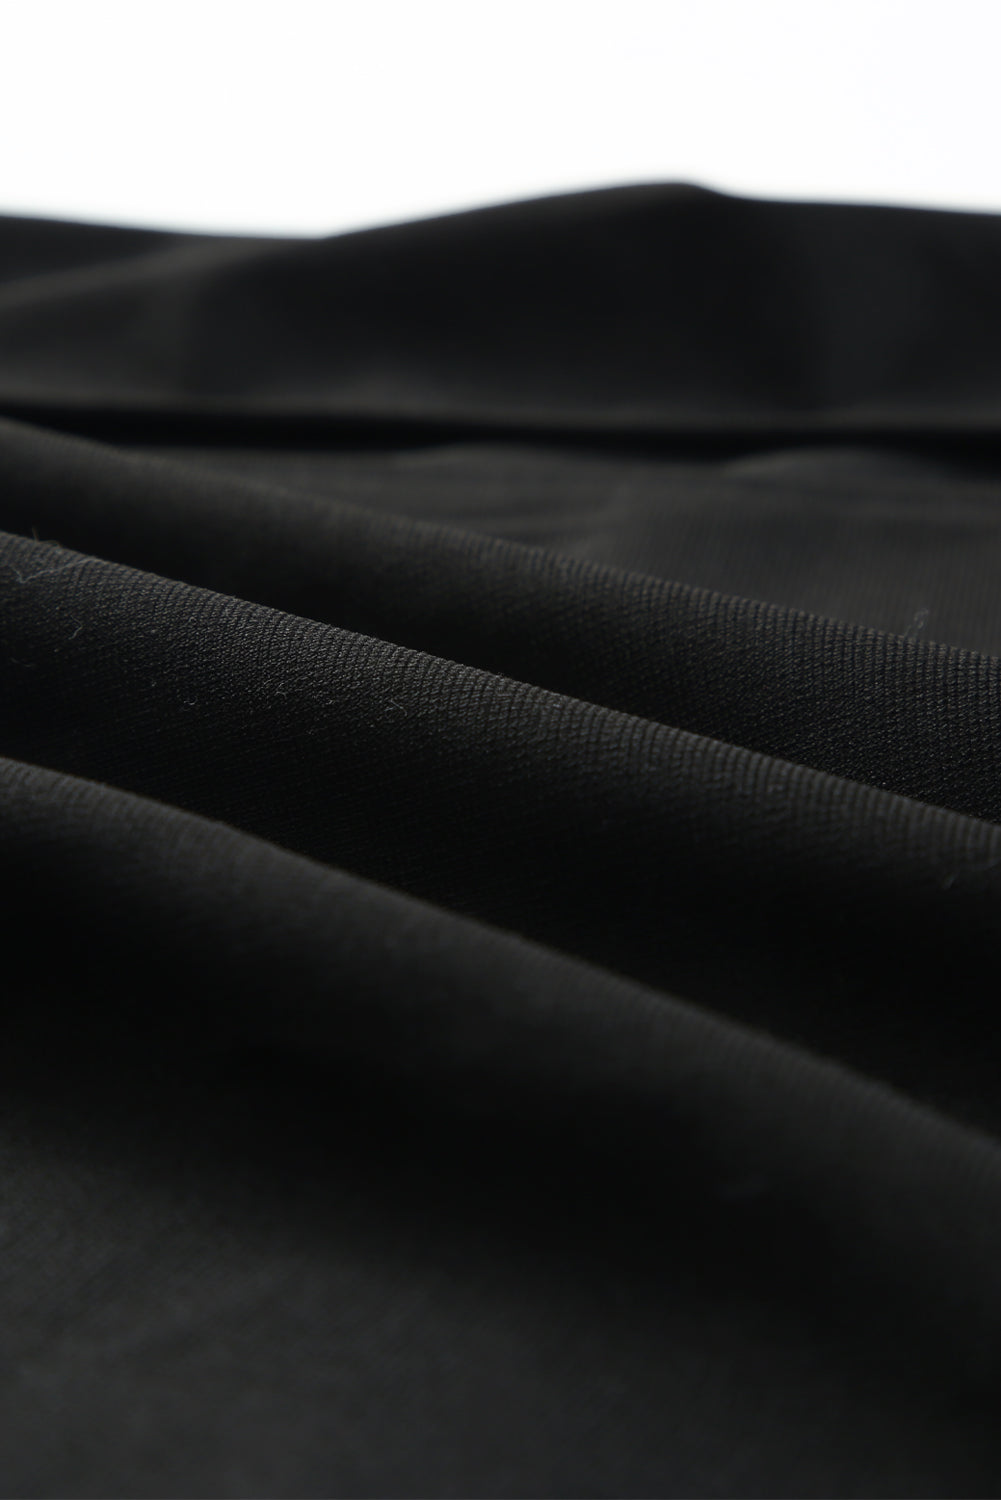 Črna midi obleka z naramnicami, obrobo s perjem in z razporkom